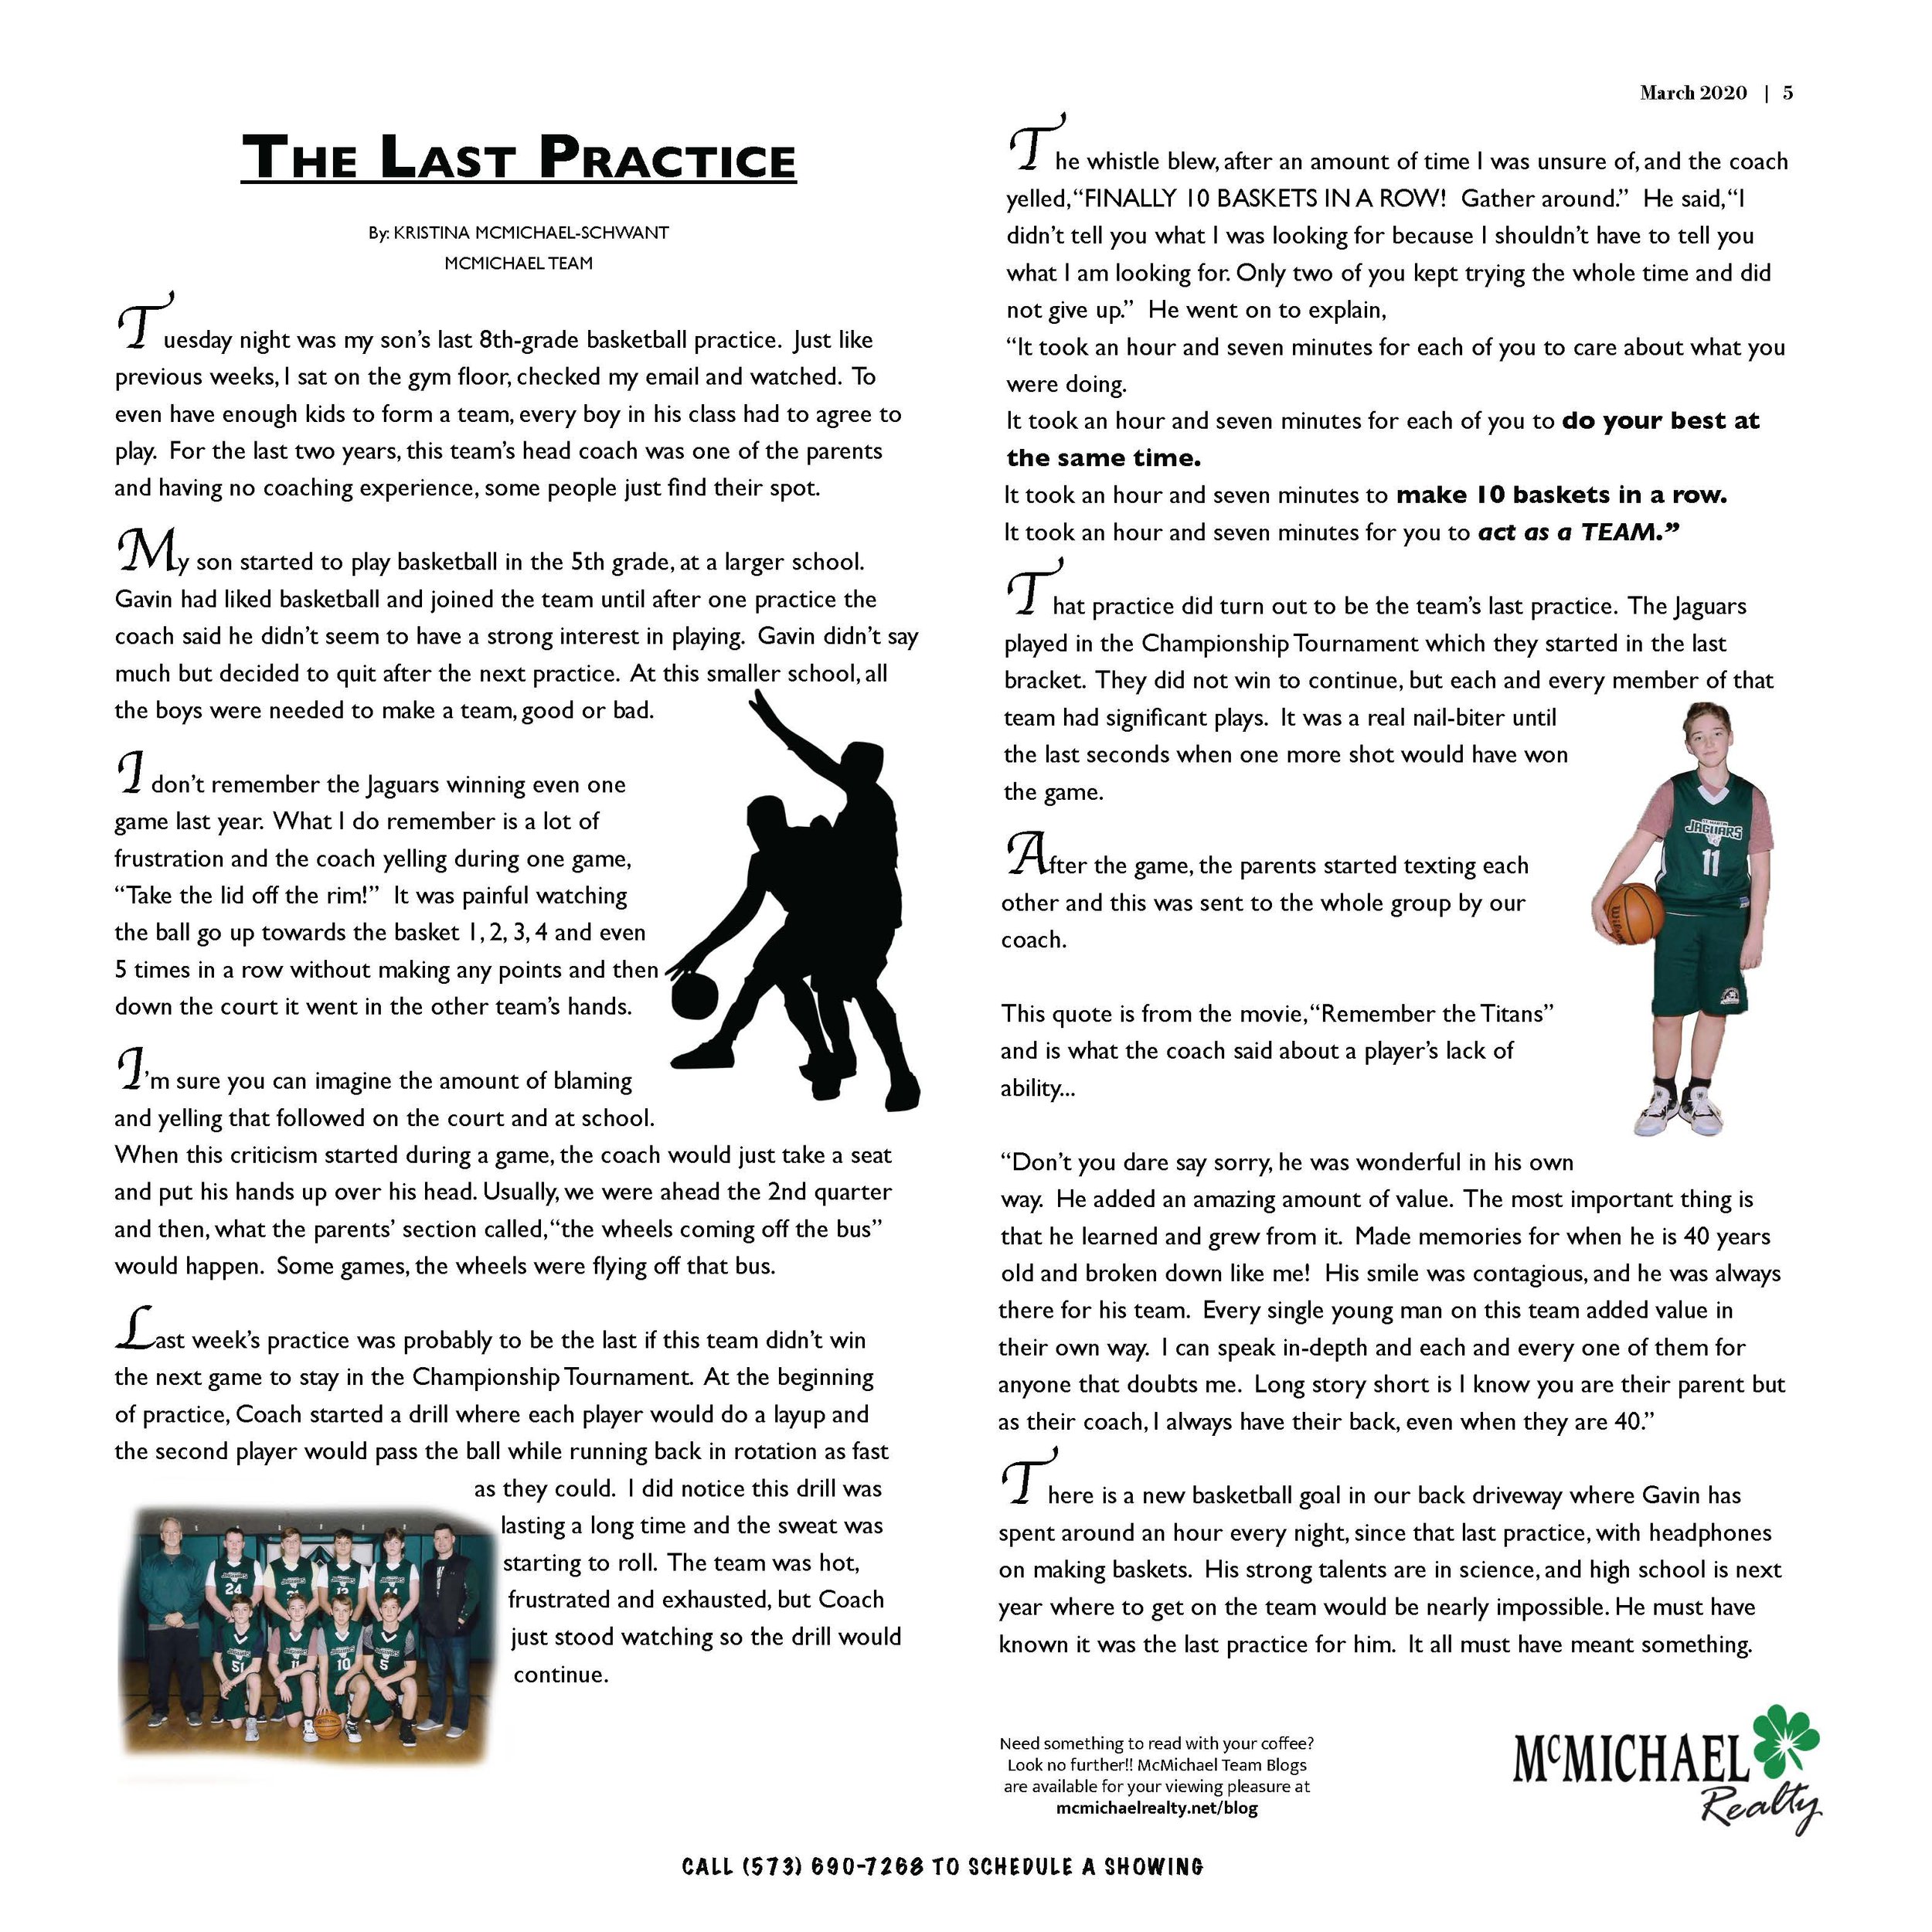 The Last Practice